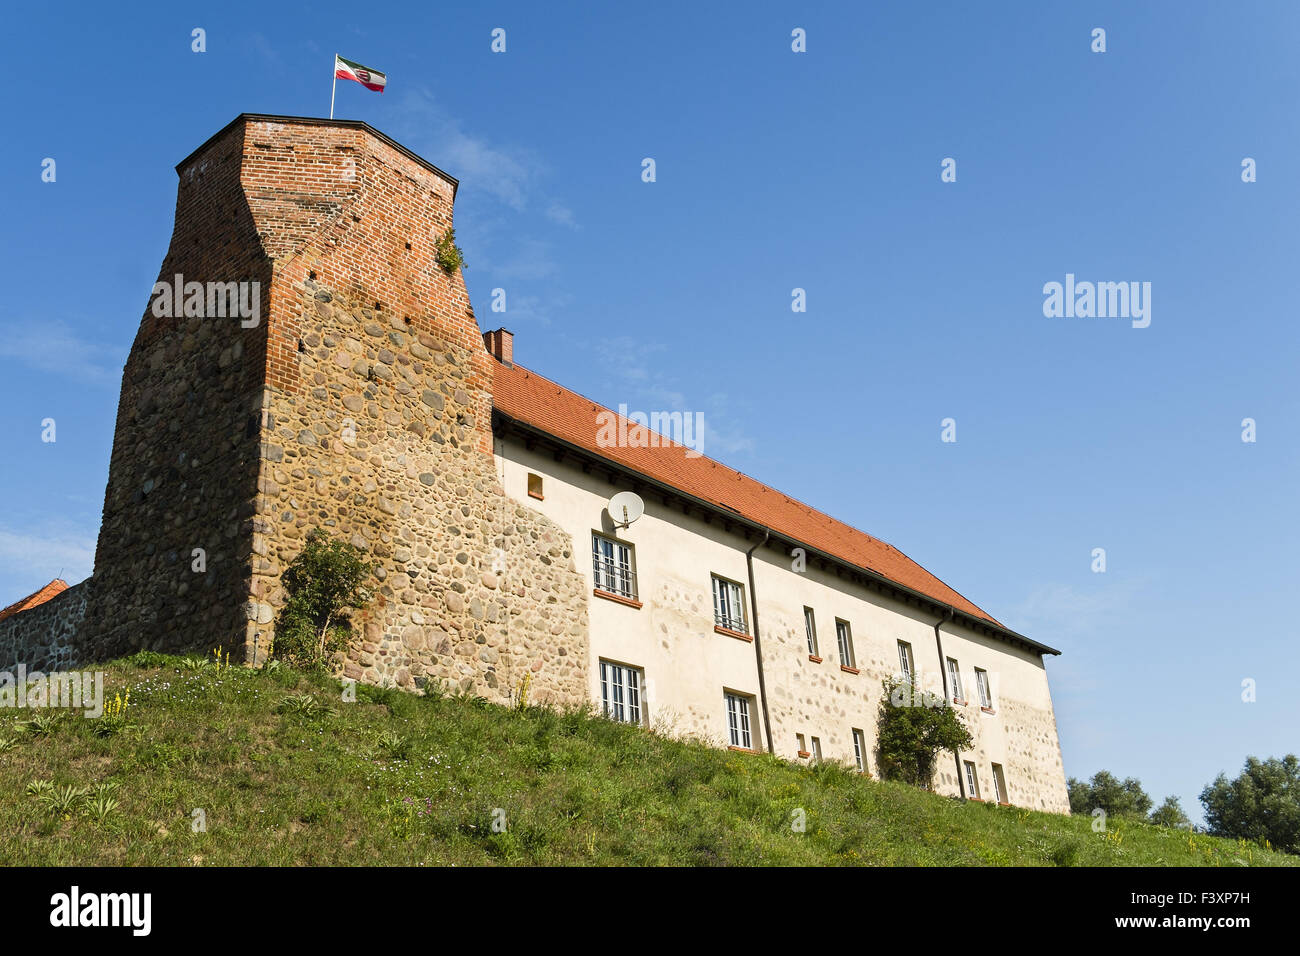 Wesenberg Castle, Wesenberg, Germany Stock Photo